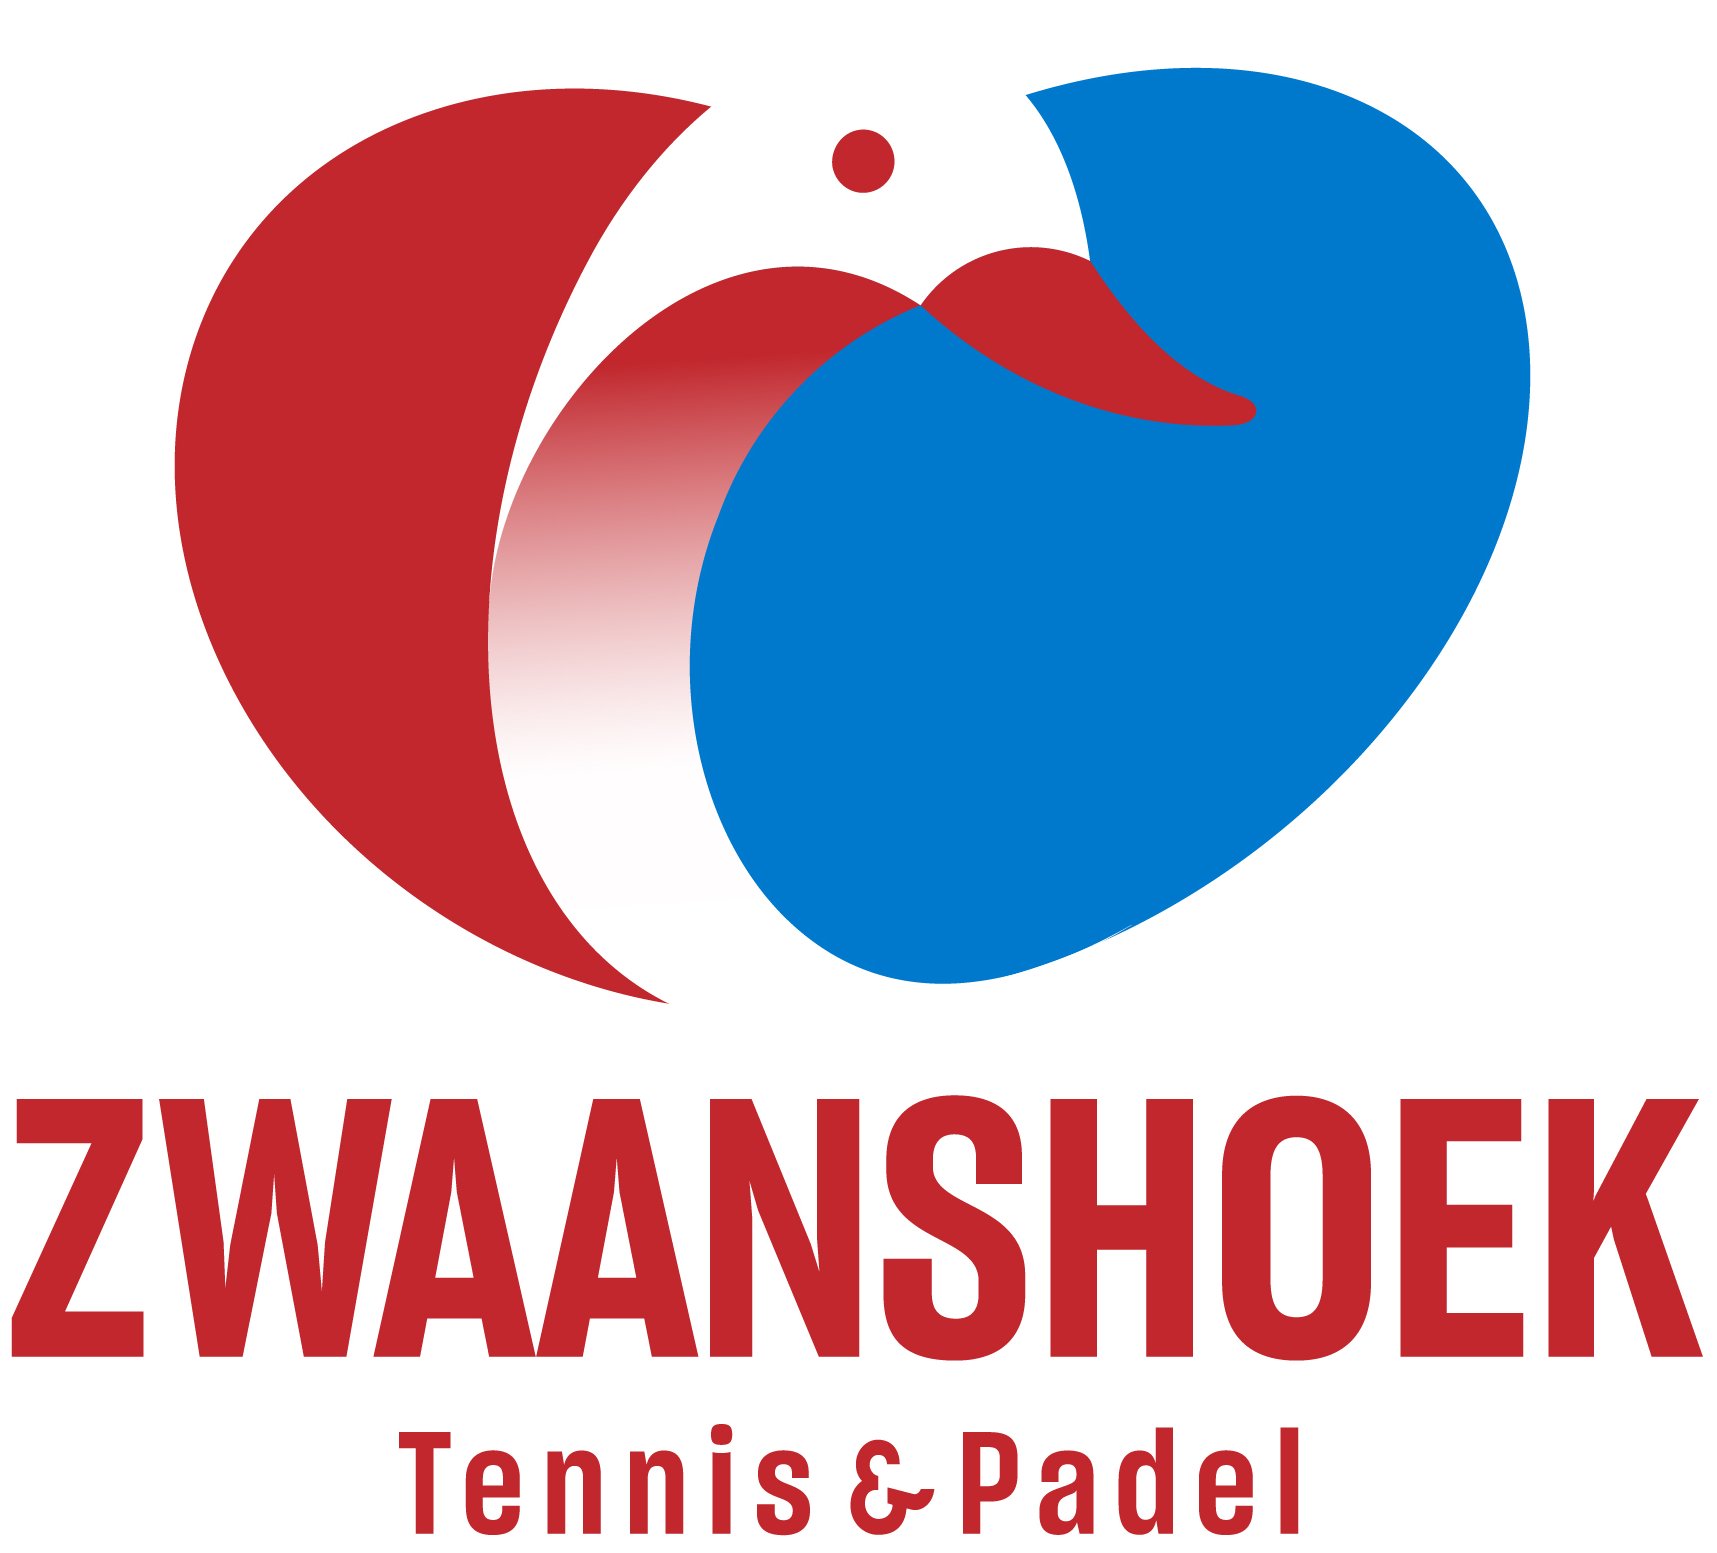 Zwaanshoek Tennis & Padel